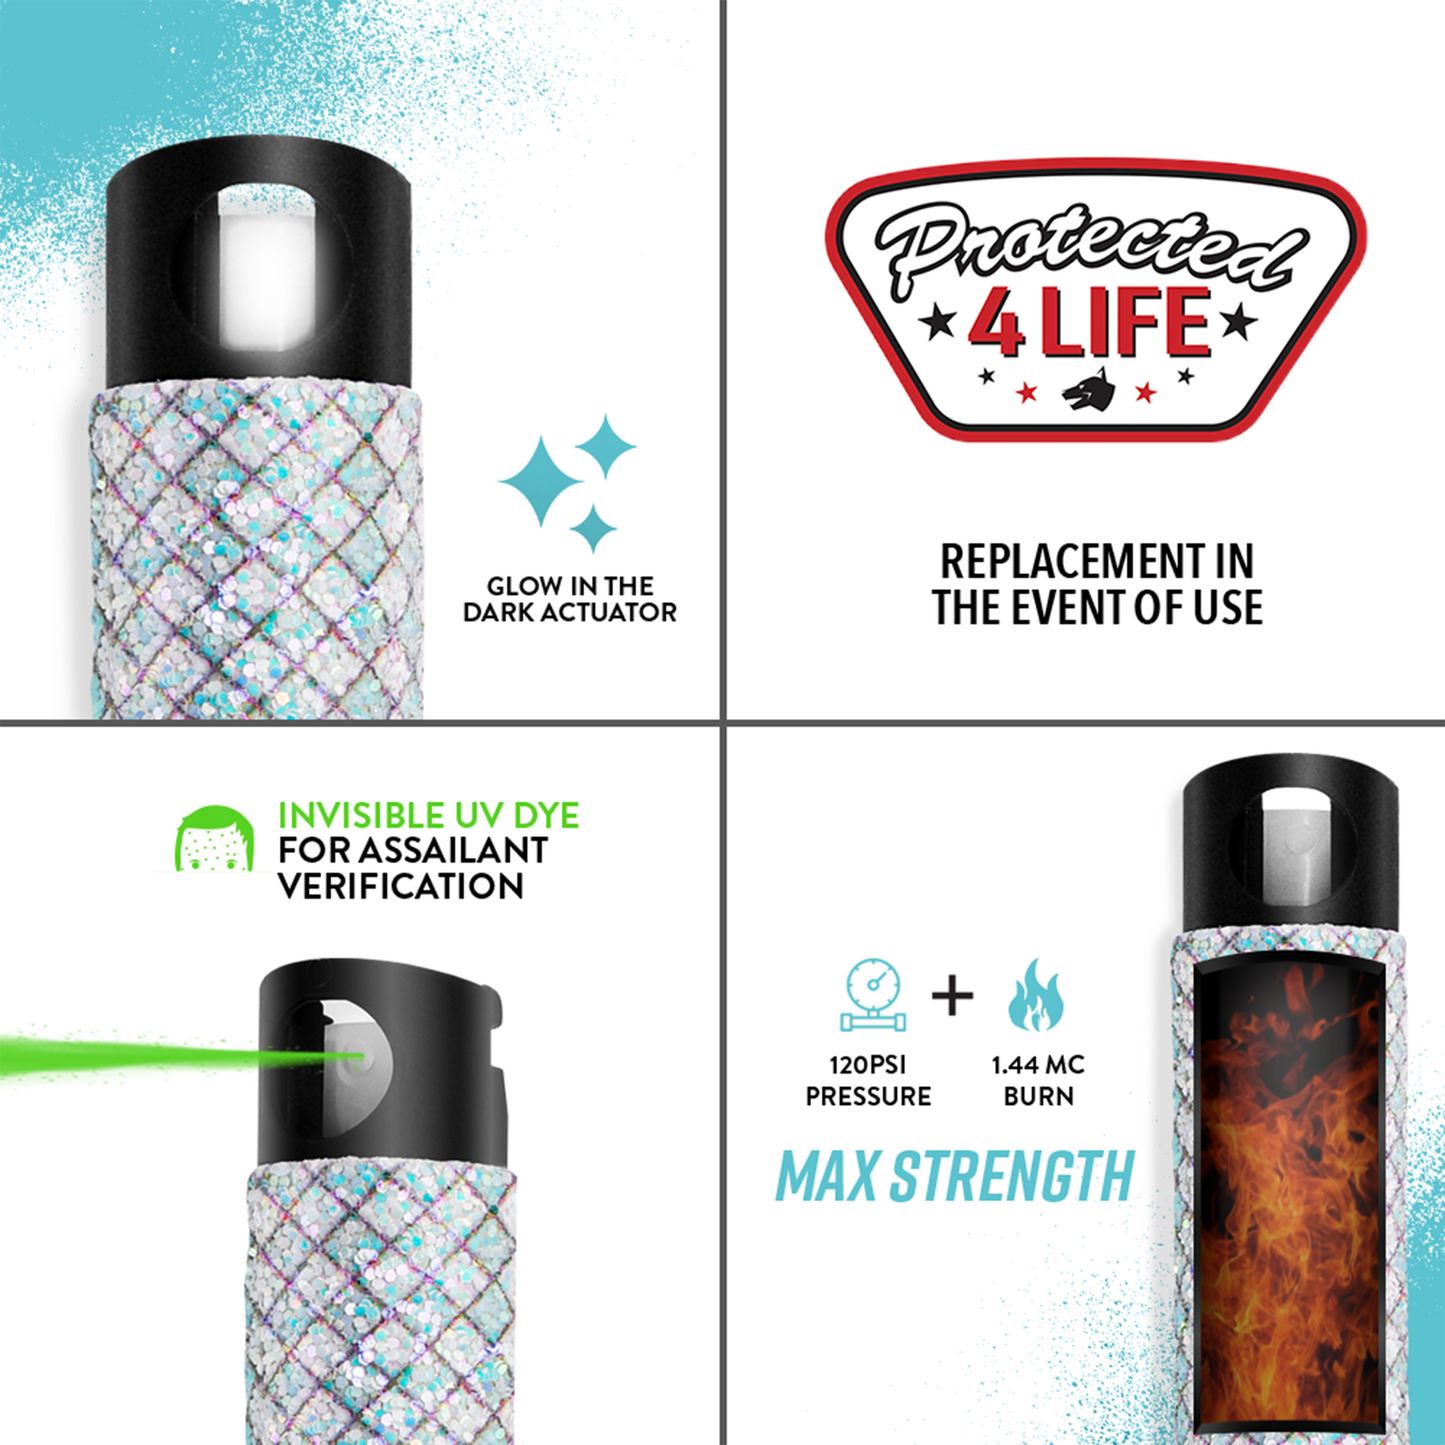 
                  
                    Pepper Spray with Stylish Rhinestone Design | GID w/ Snap Clip
                  
                